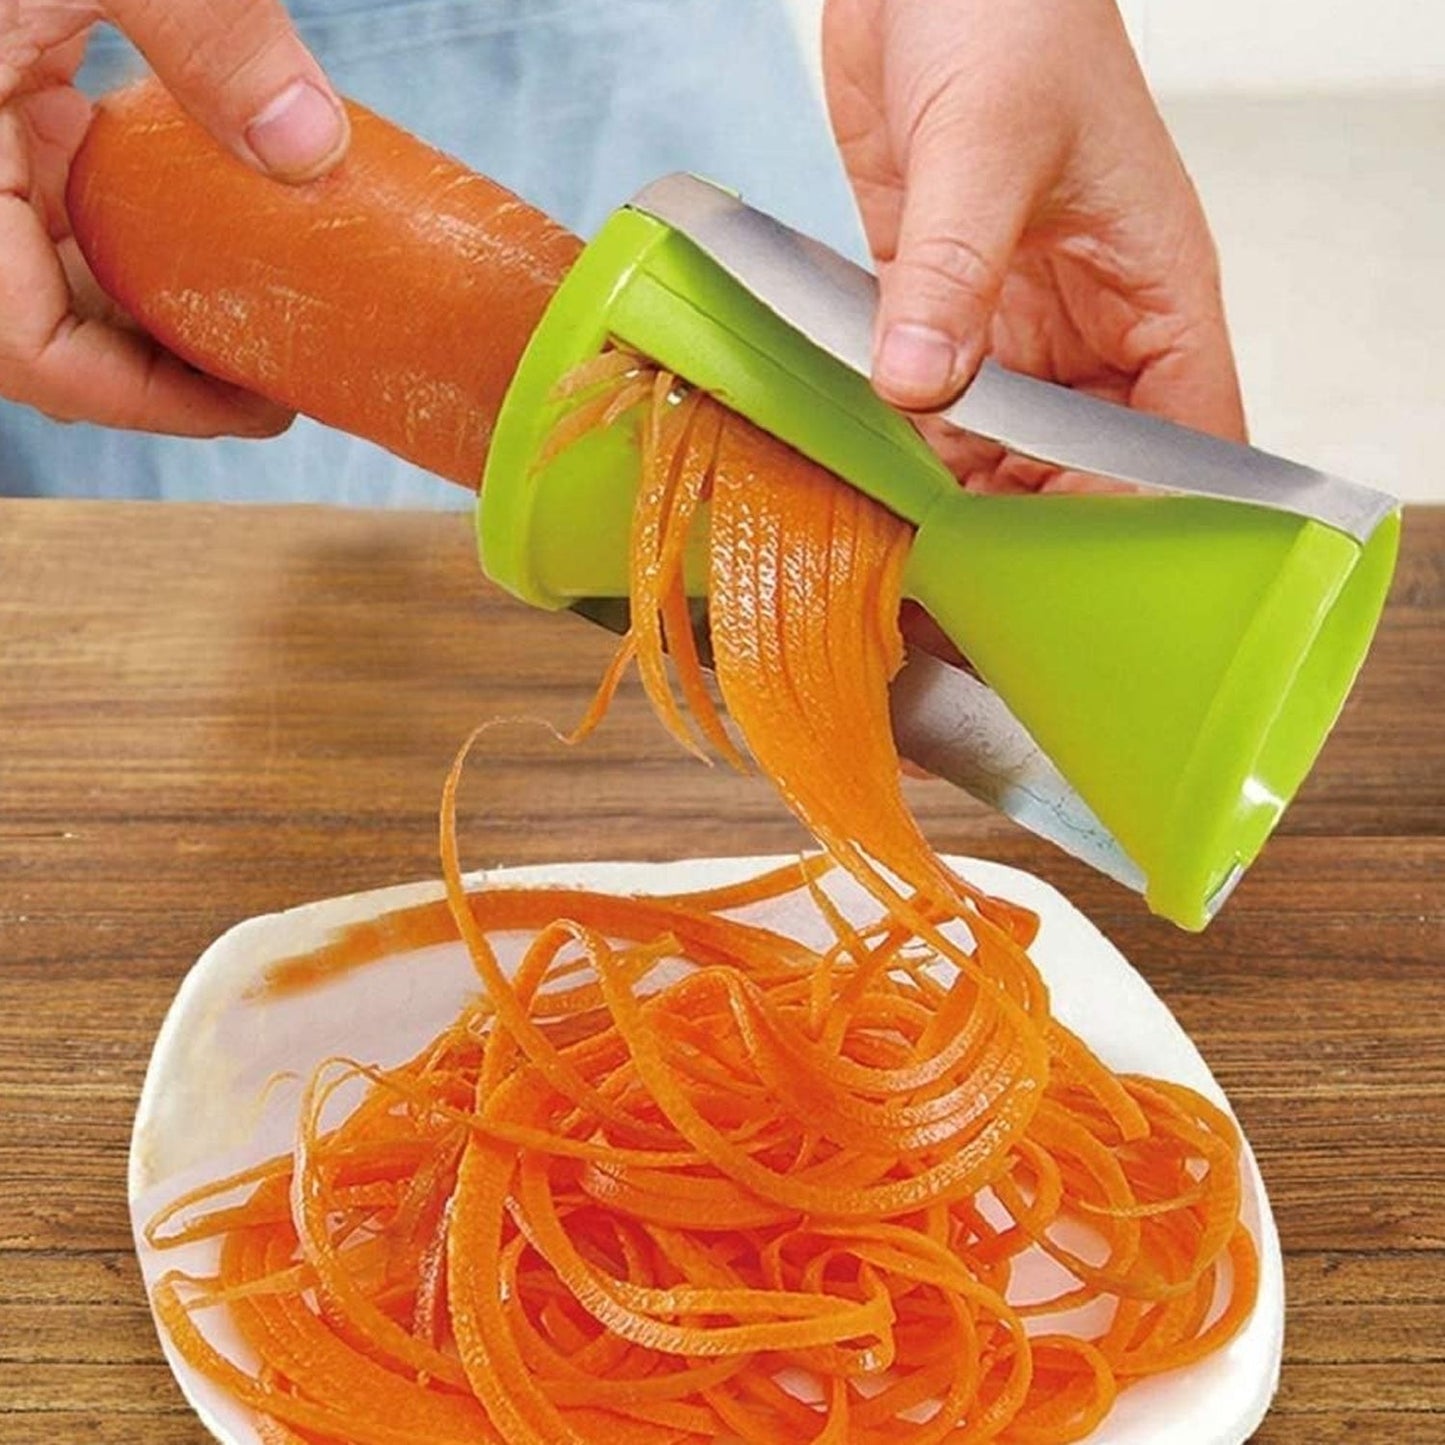 Portable Spiralizer Vegetable Slicer Handheld Spiralizer Peeler Stainless Steel Spiral Slicer For Salad Vegetables Fruit Slicer